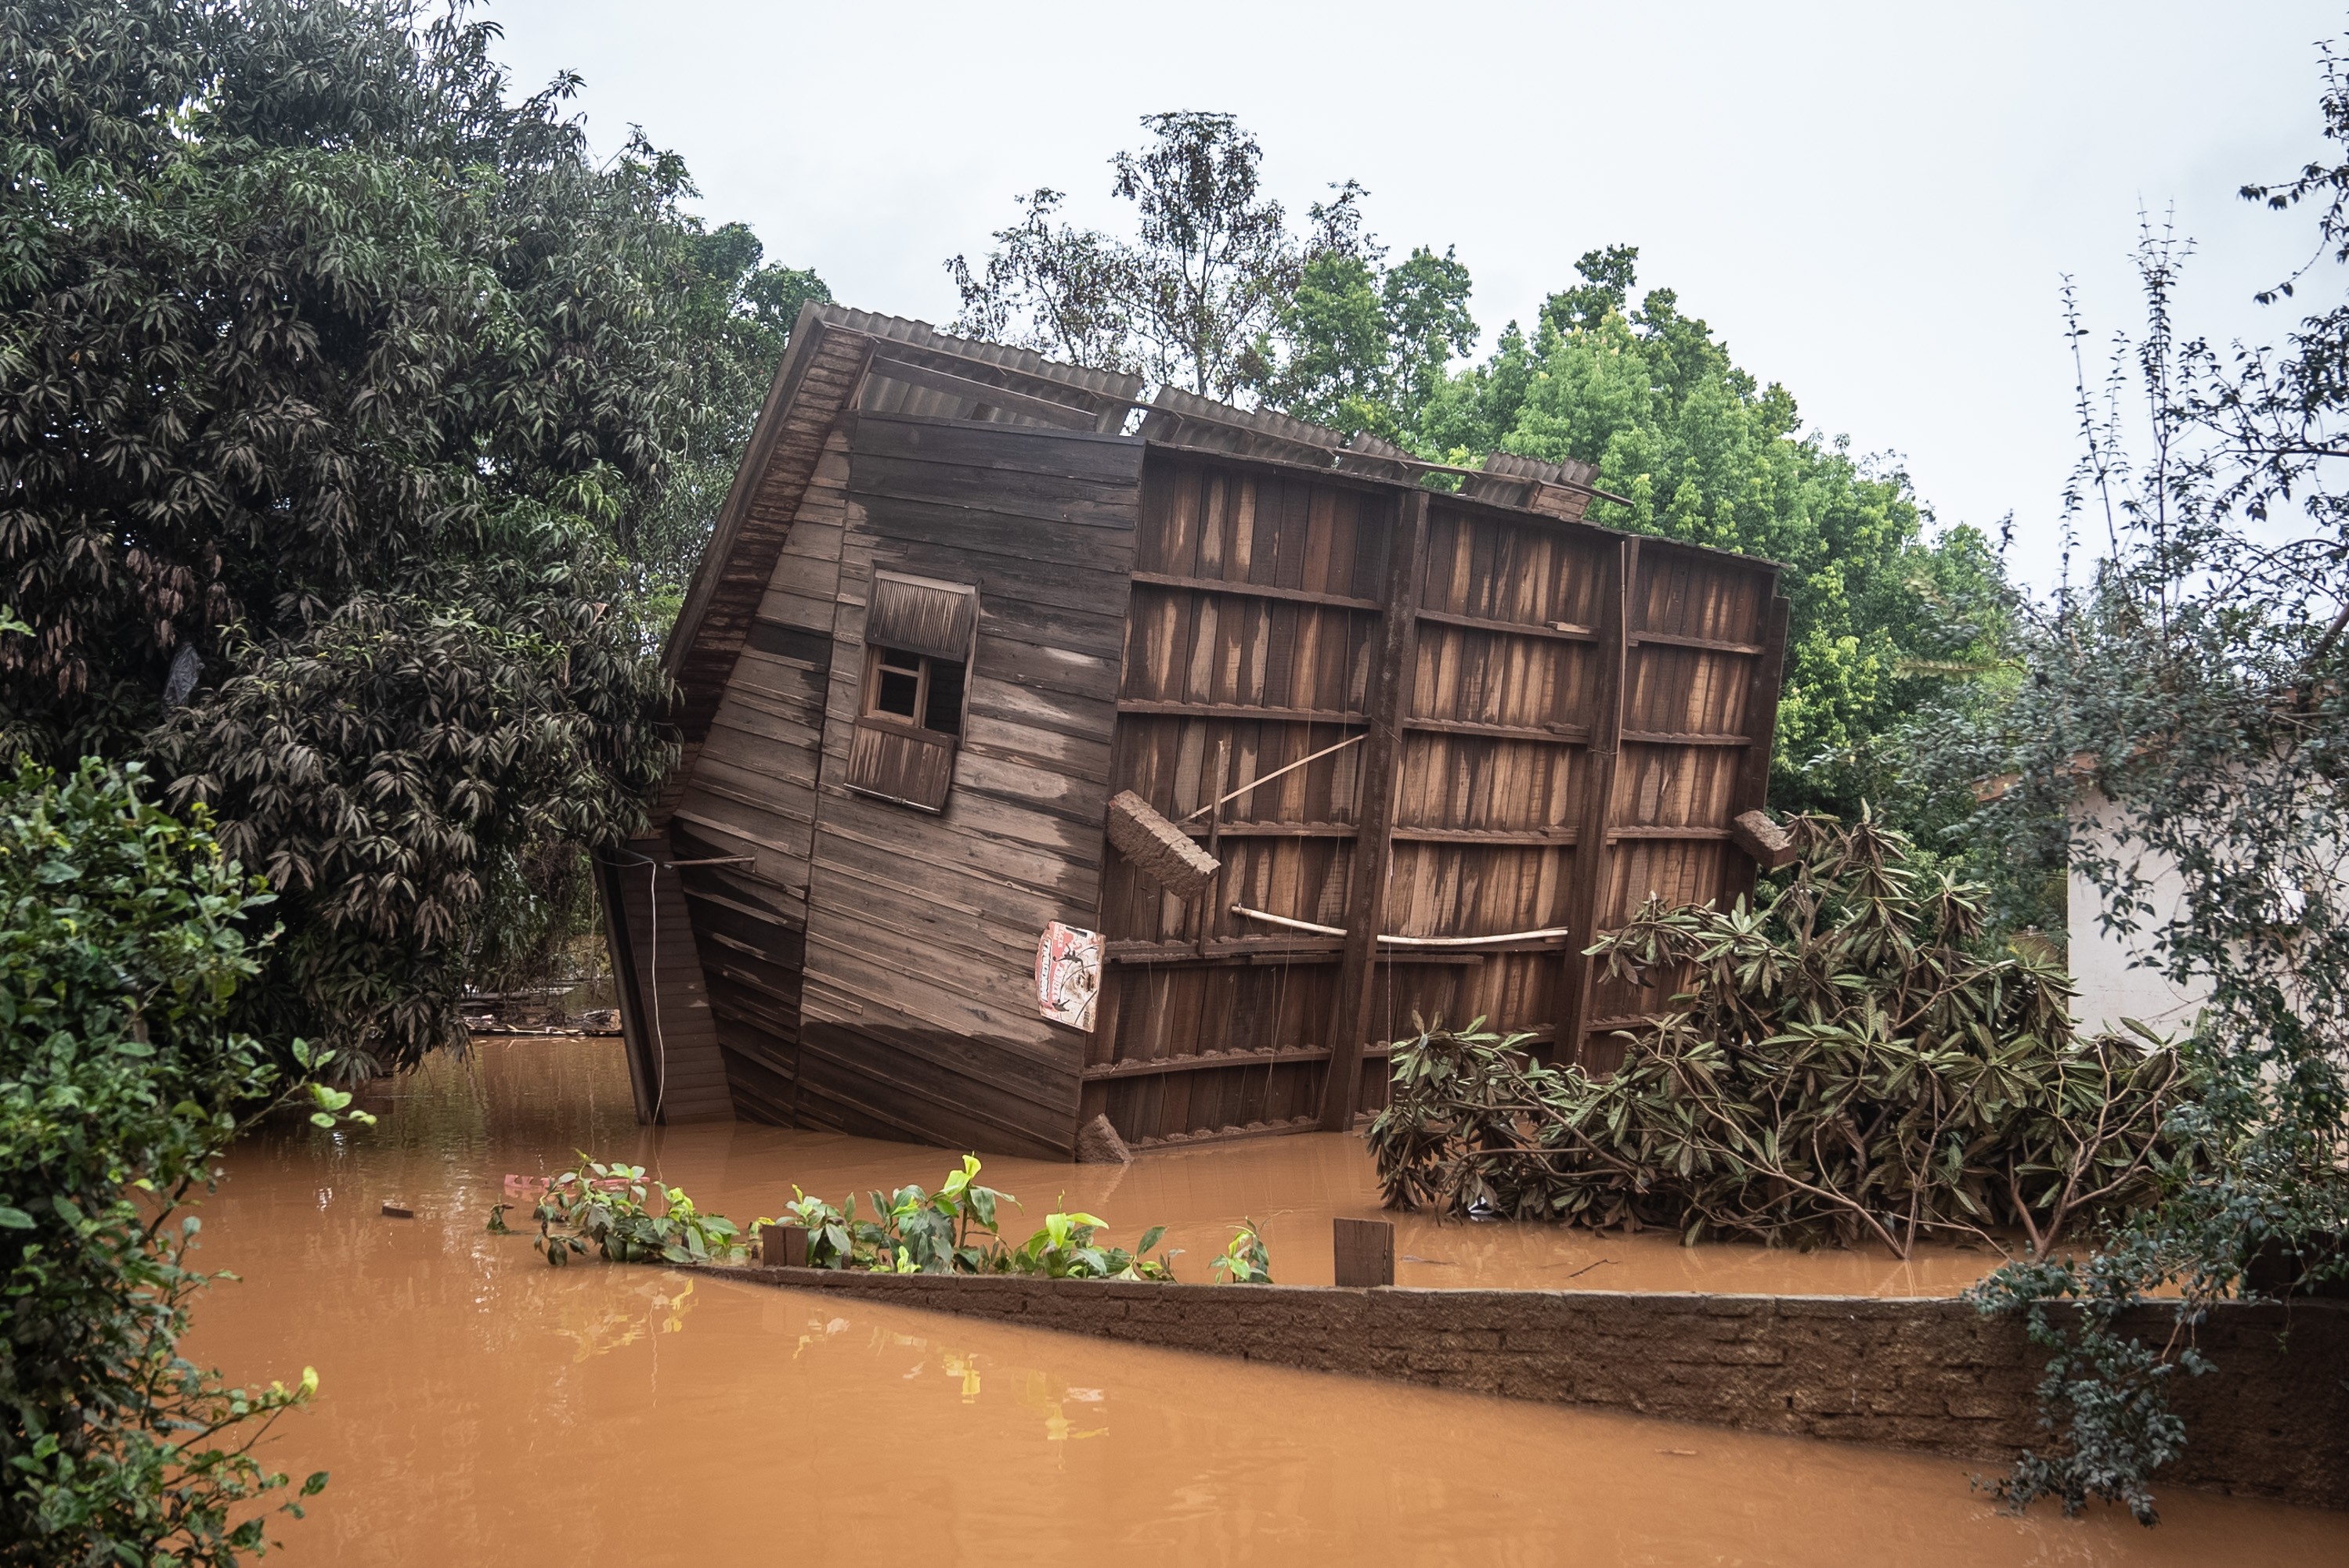 Casa tombada, cemitério alagado e lama por todos os lados: a situação de Lajeado após série de enchentes